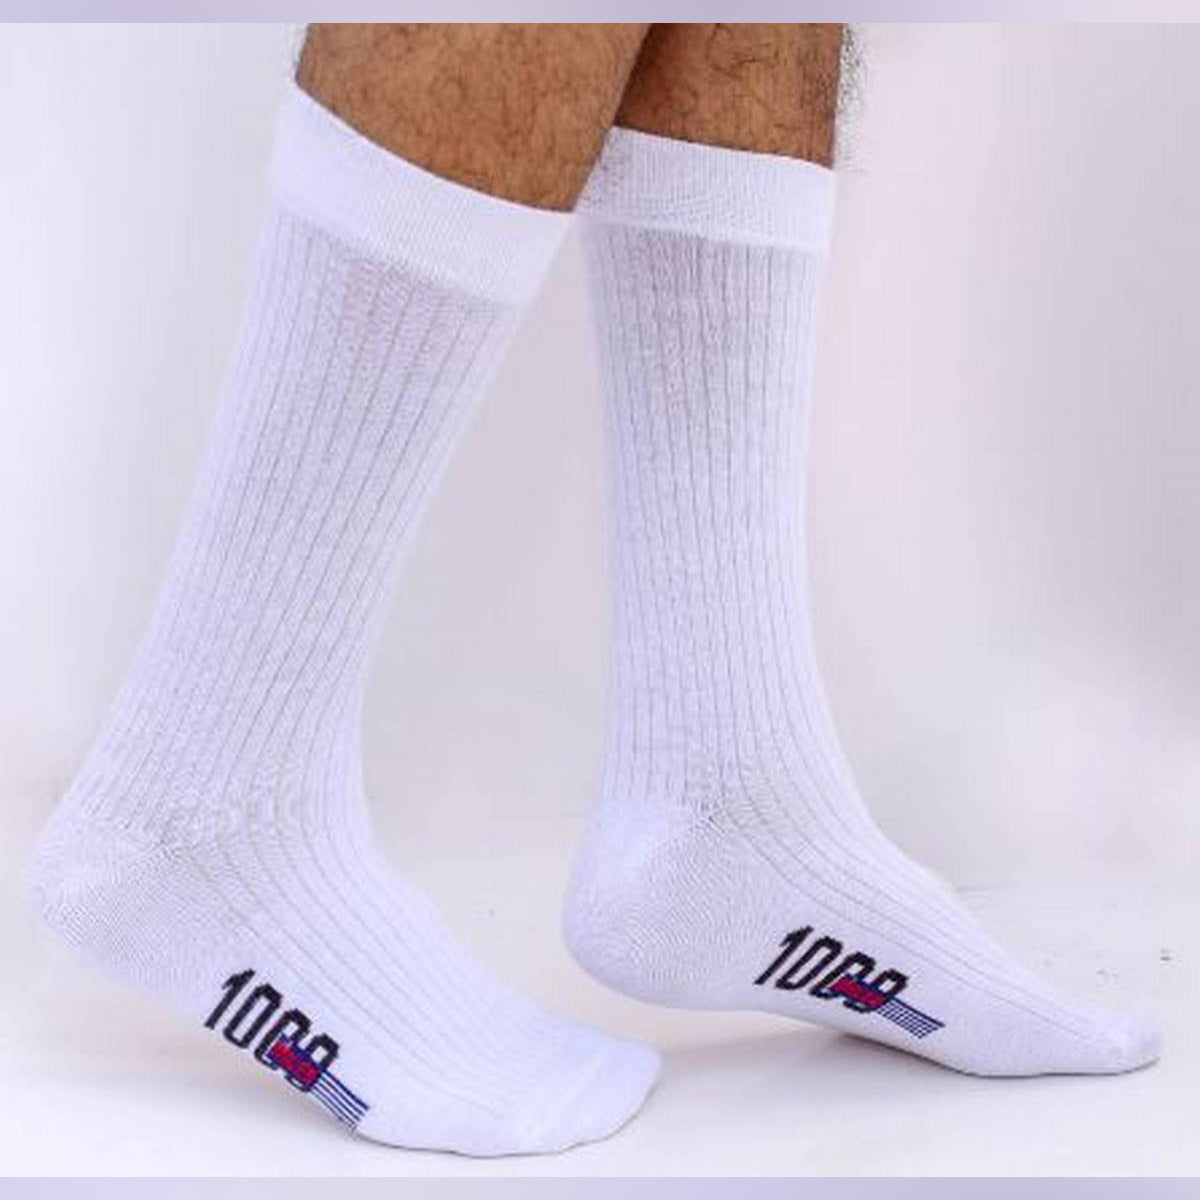 Swan 1000miles Long Socks for Men by MB Hosiery